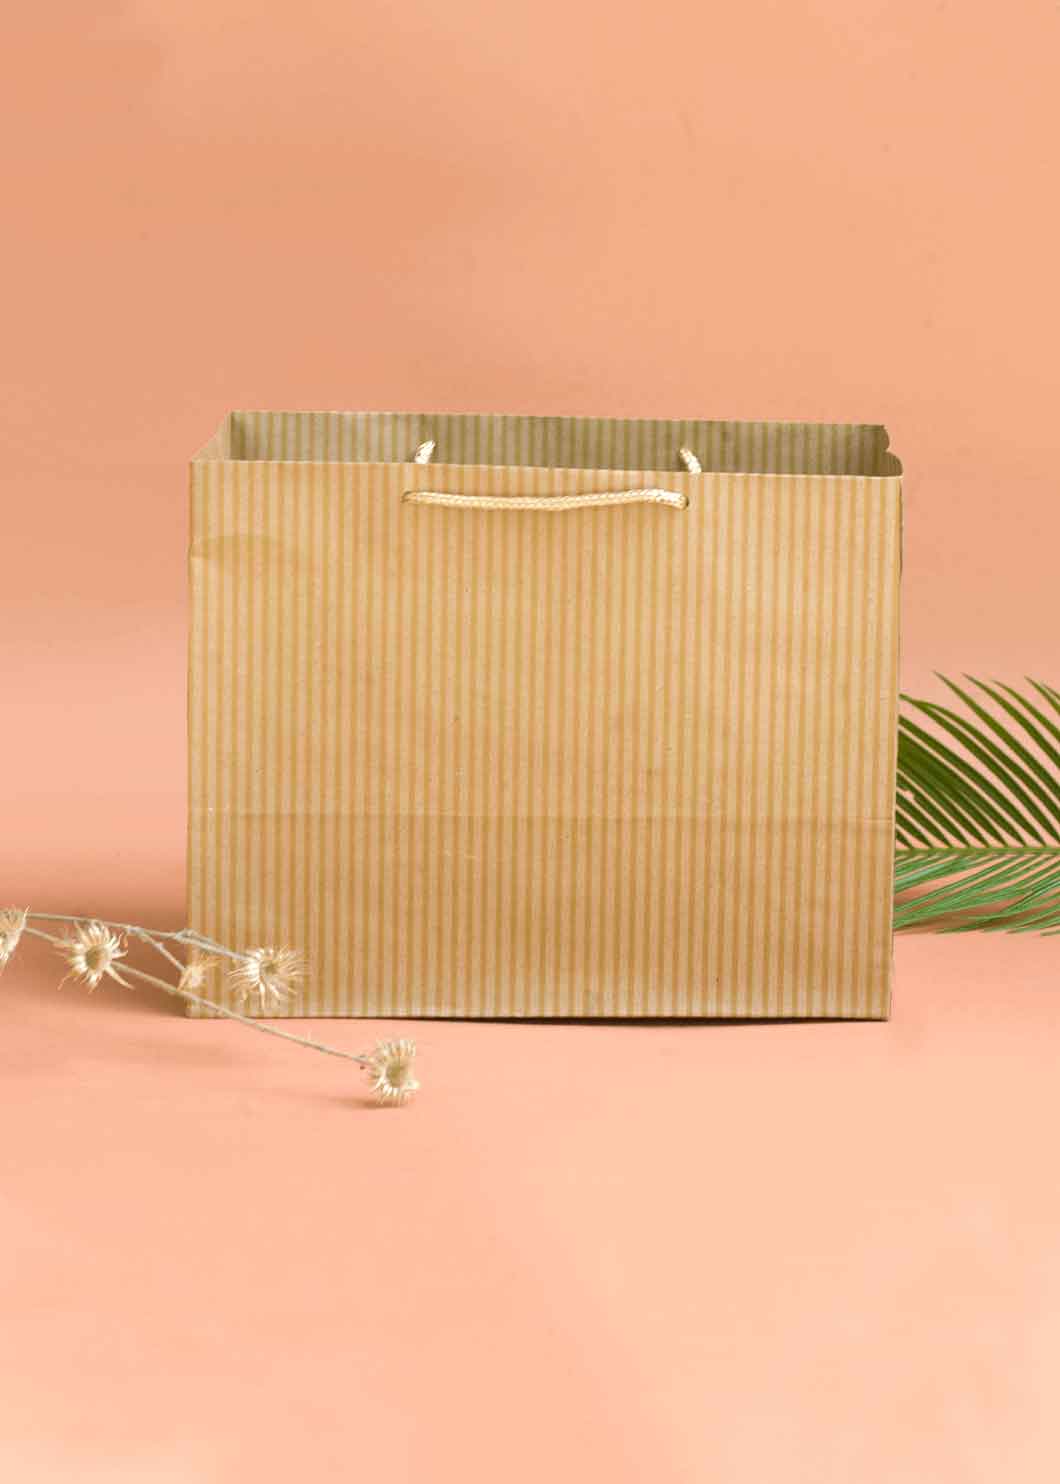 Craft Line Pattern Paper Bag - Line Print Design Paper Bag for Multipurpose Packing